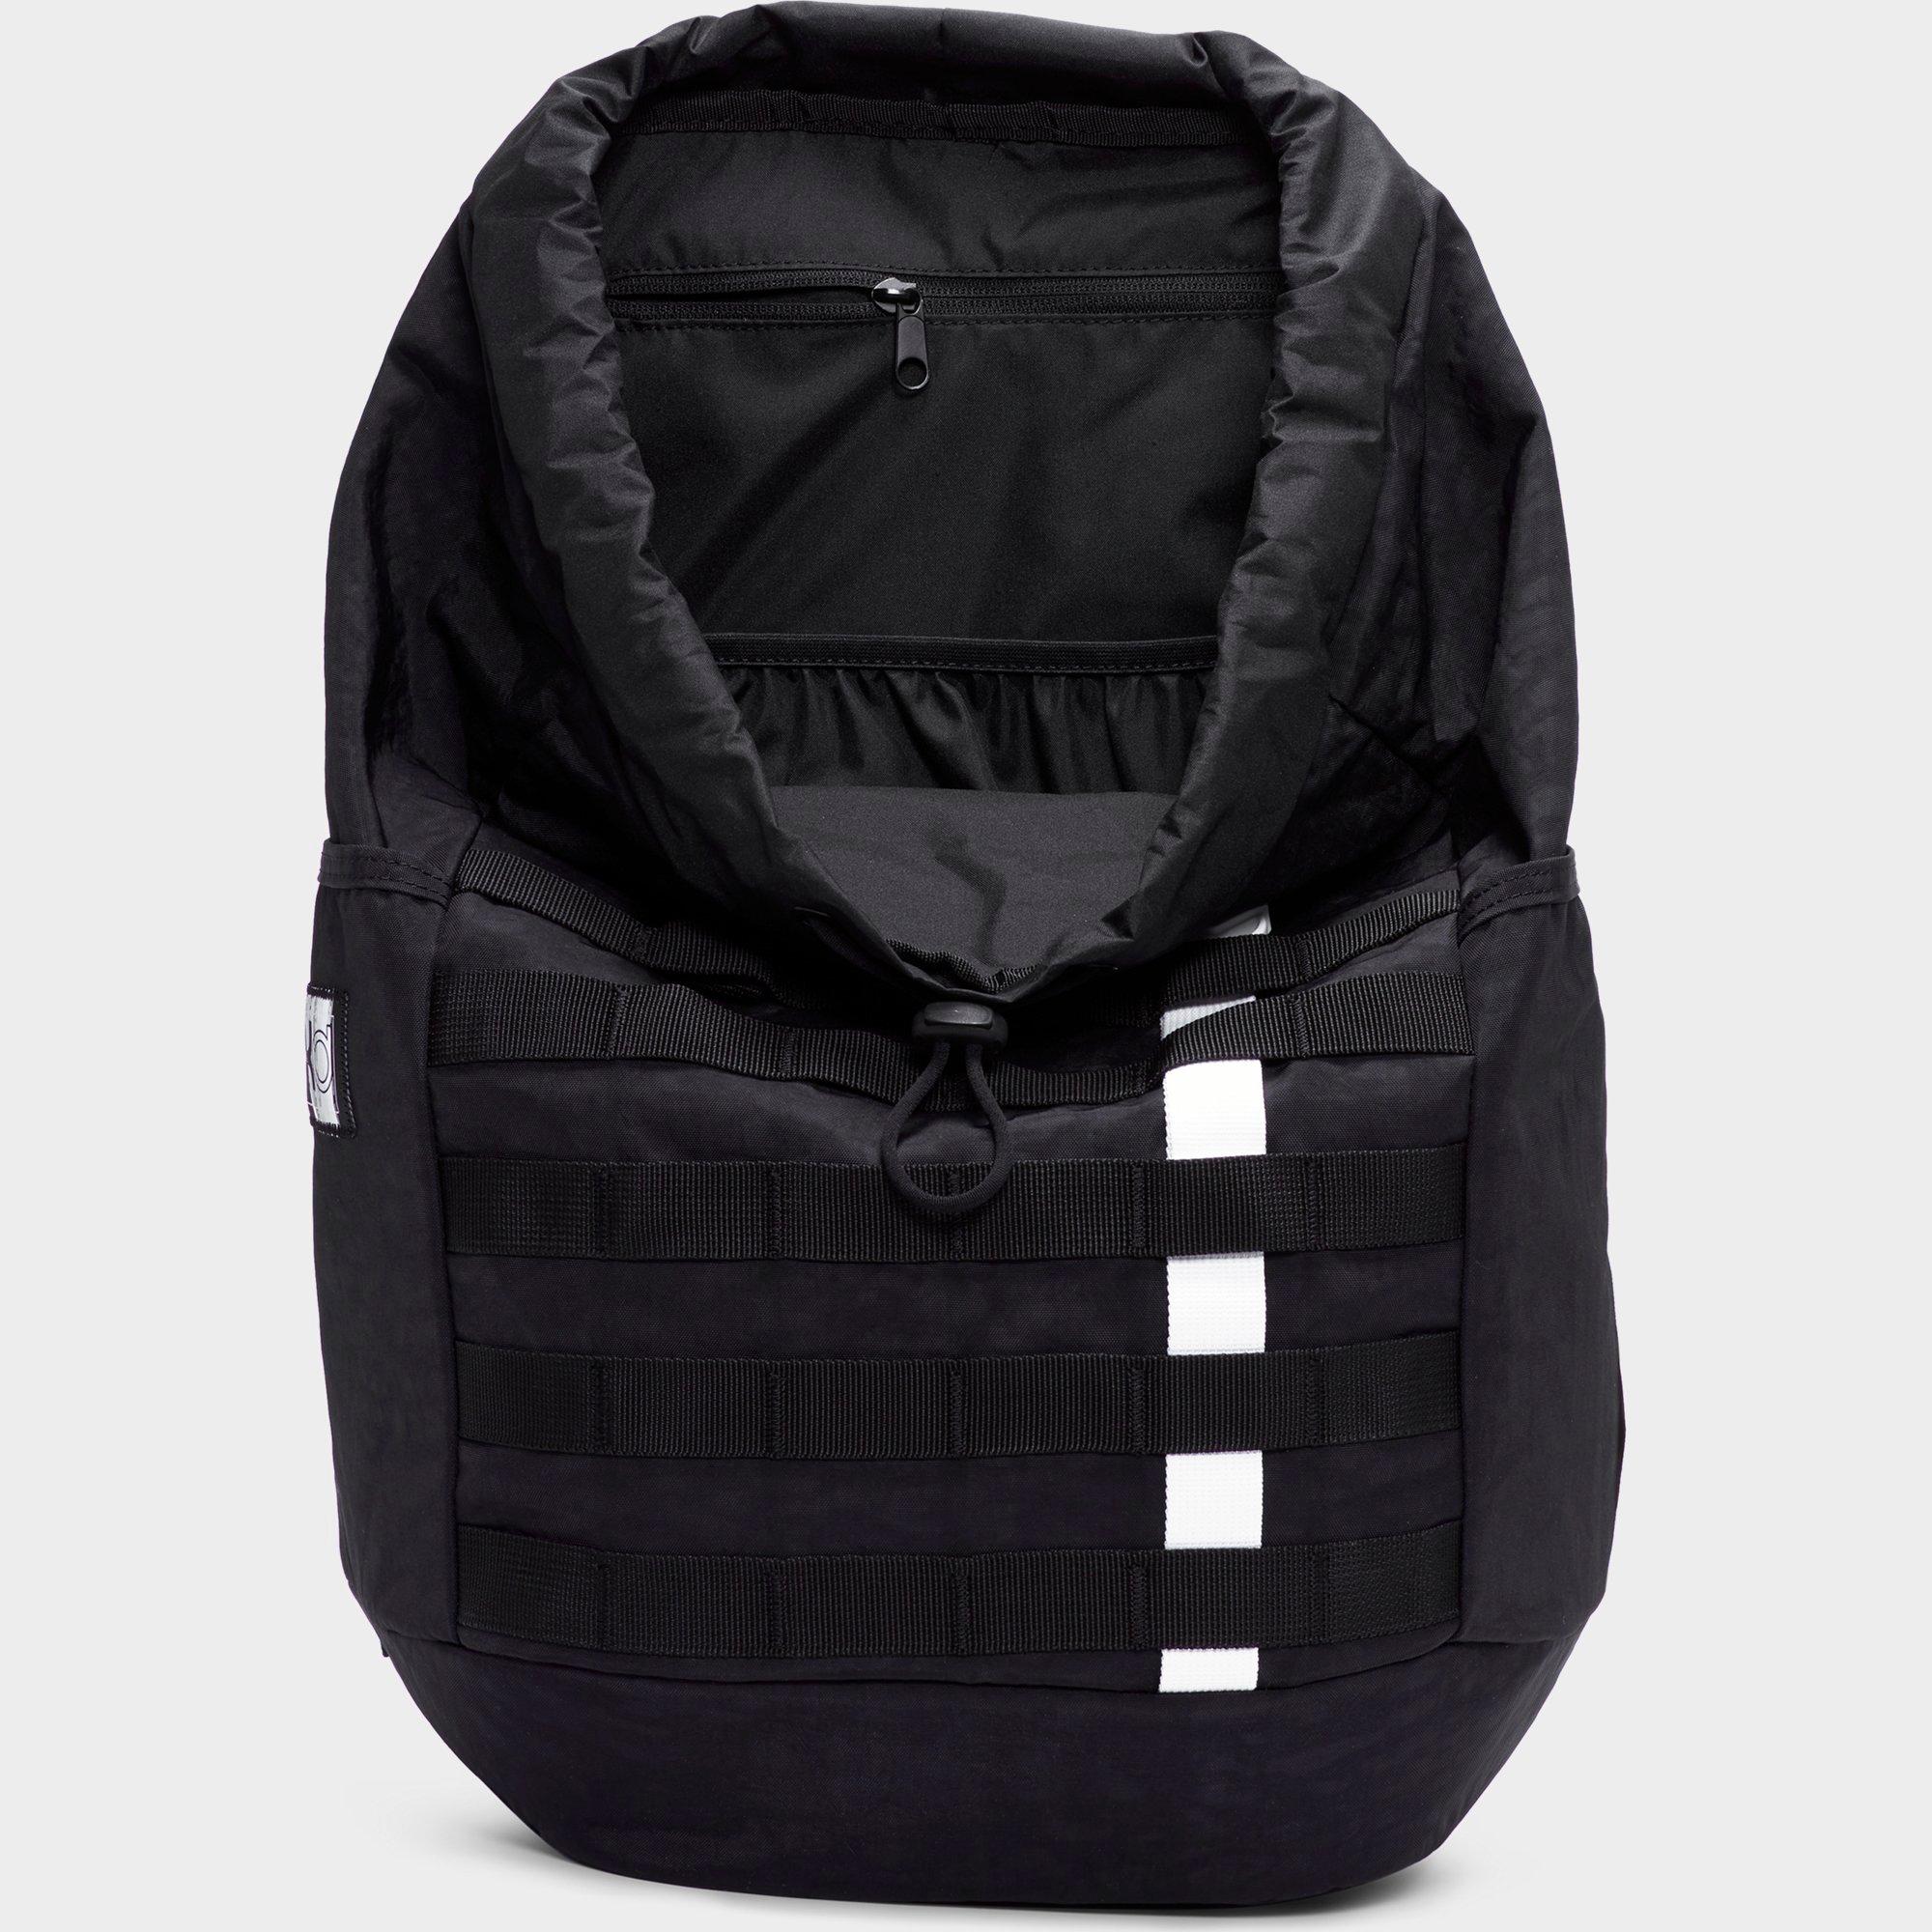 kd backpack black